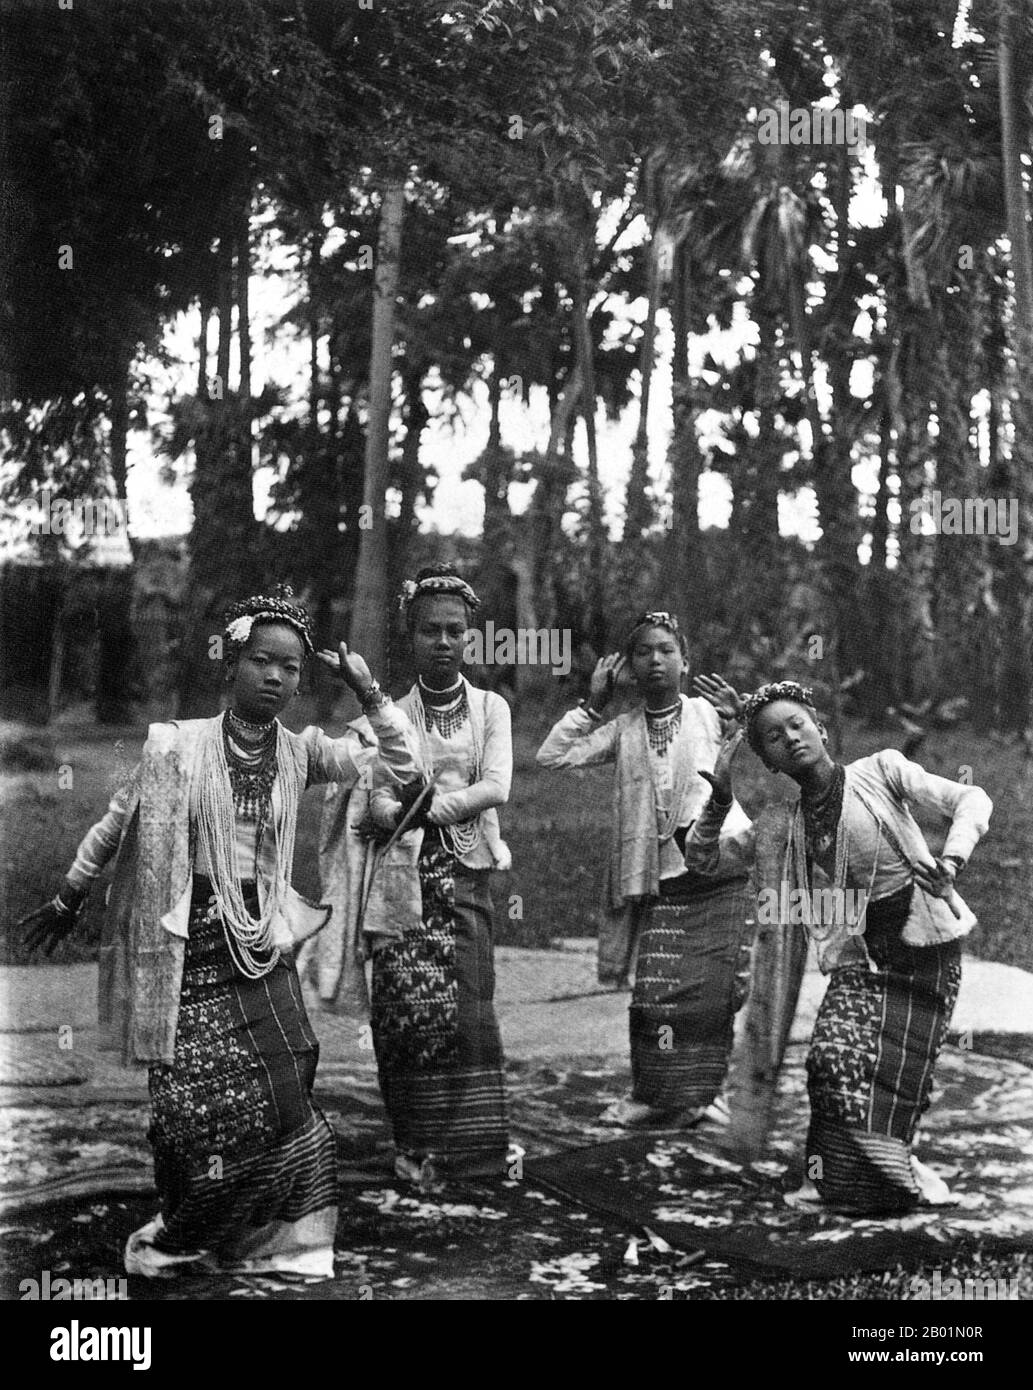 Birma/Myanmar: Fünf junge burmesische (Bamar) tanzende Mädchen, die eine traditionelle Tanzaufführung unter dem Namen Pwe (um 1895) aufführen. Die britische Eroberung Burmas begann 1824 als Reaktion auf einen burmesischen Versuch, in Indien einzumarschieren. 1886 und nach zwei weiteren Kriegen hatte Großbritannien das gesamte Land in den britischen Raj aufgenommen. Um den Handel anzukurbeln und Veränderungen zu erleichtern, brachten die Briten Indianer und Chinesen ein, die die Burmesen schnell in städtische Gebiete verdrängten. Bis heute haben Rangoon und Mandalay große indische Bevölkerungsgruppen. Es wurden Eisenbahnen und Schulen sowie eine große Anzahl von Gefängnissen gebaut. Stockfoto